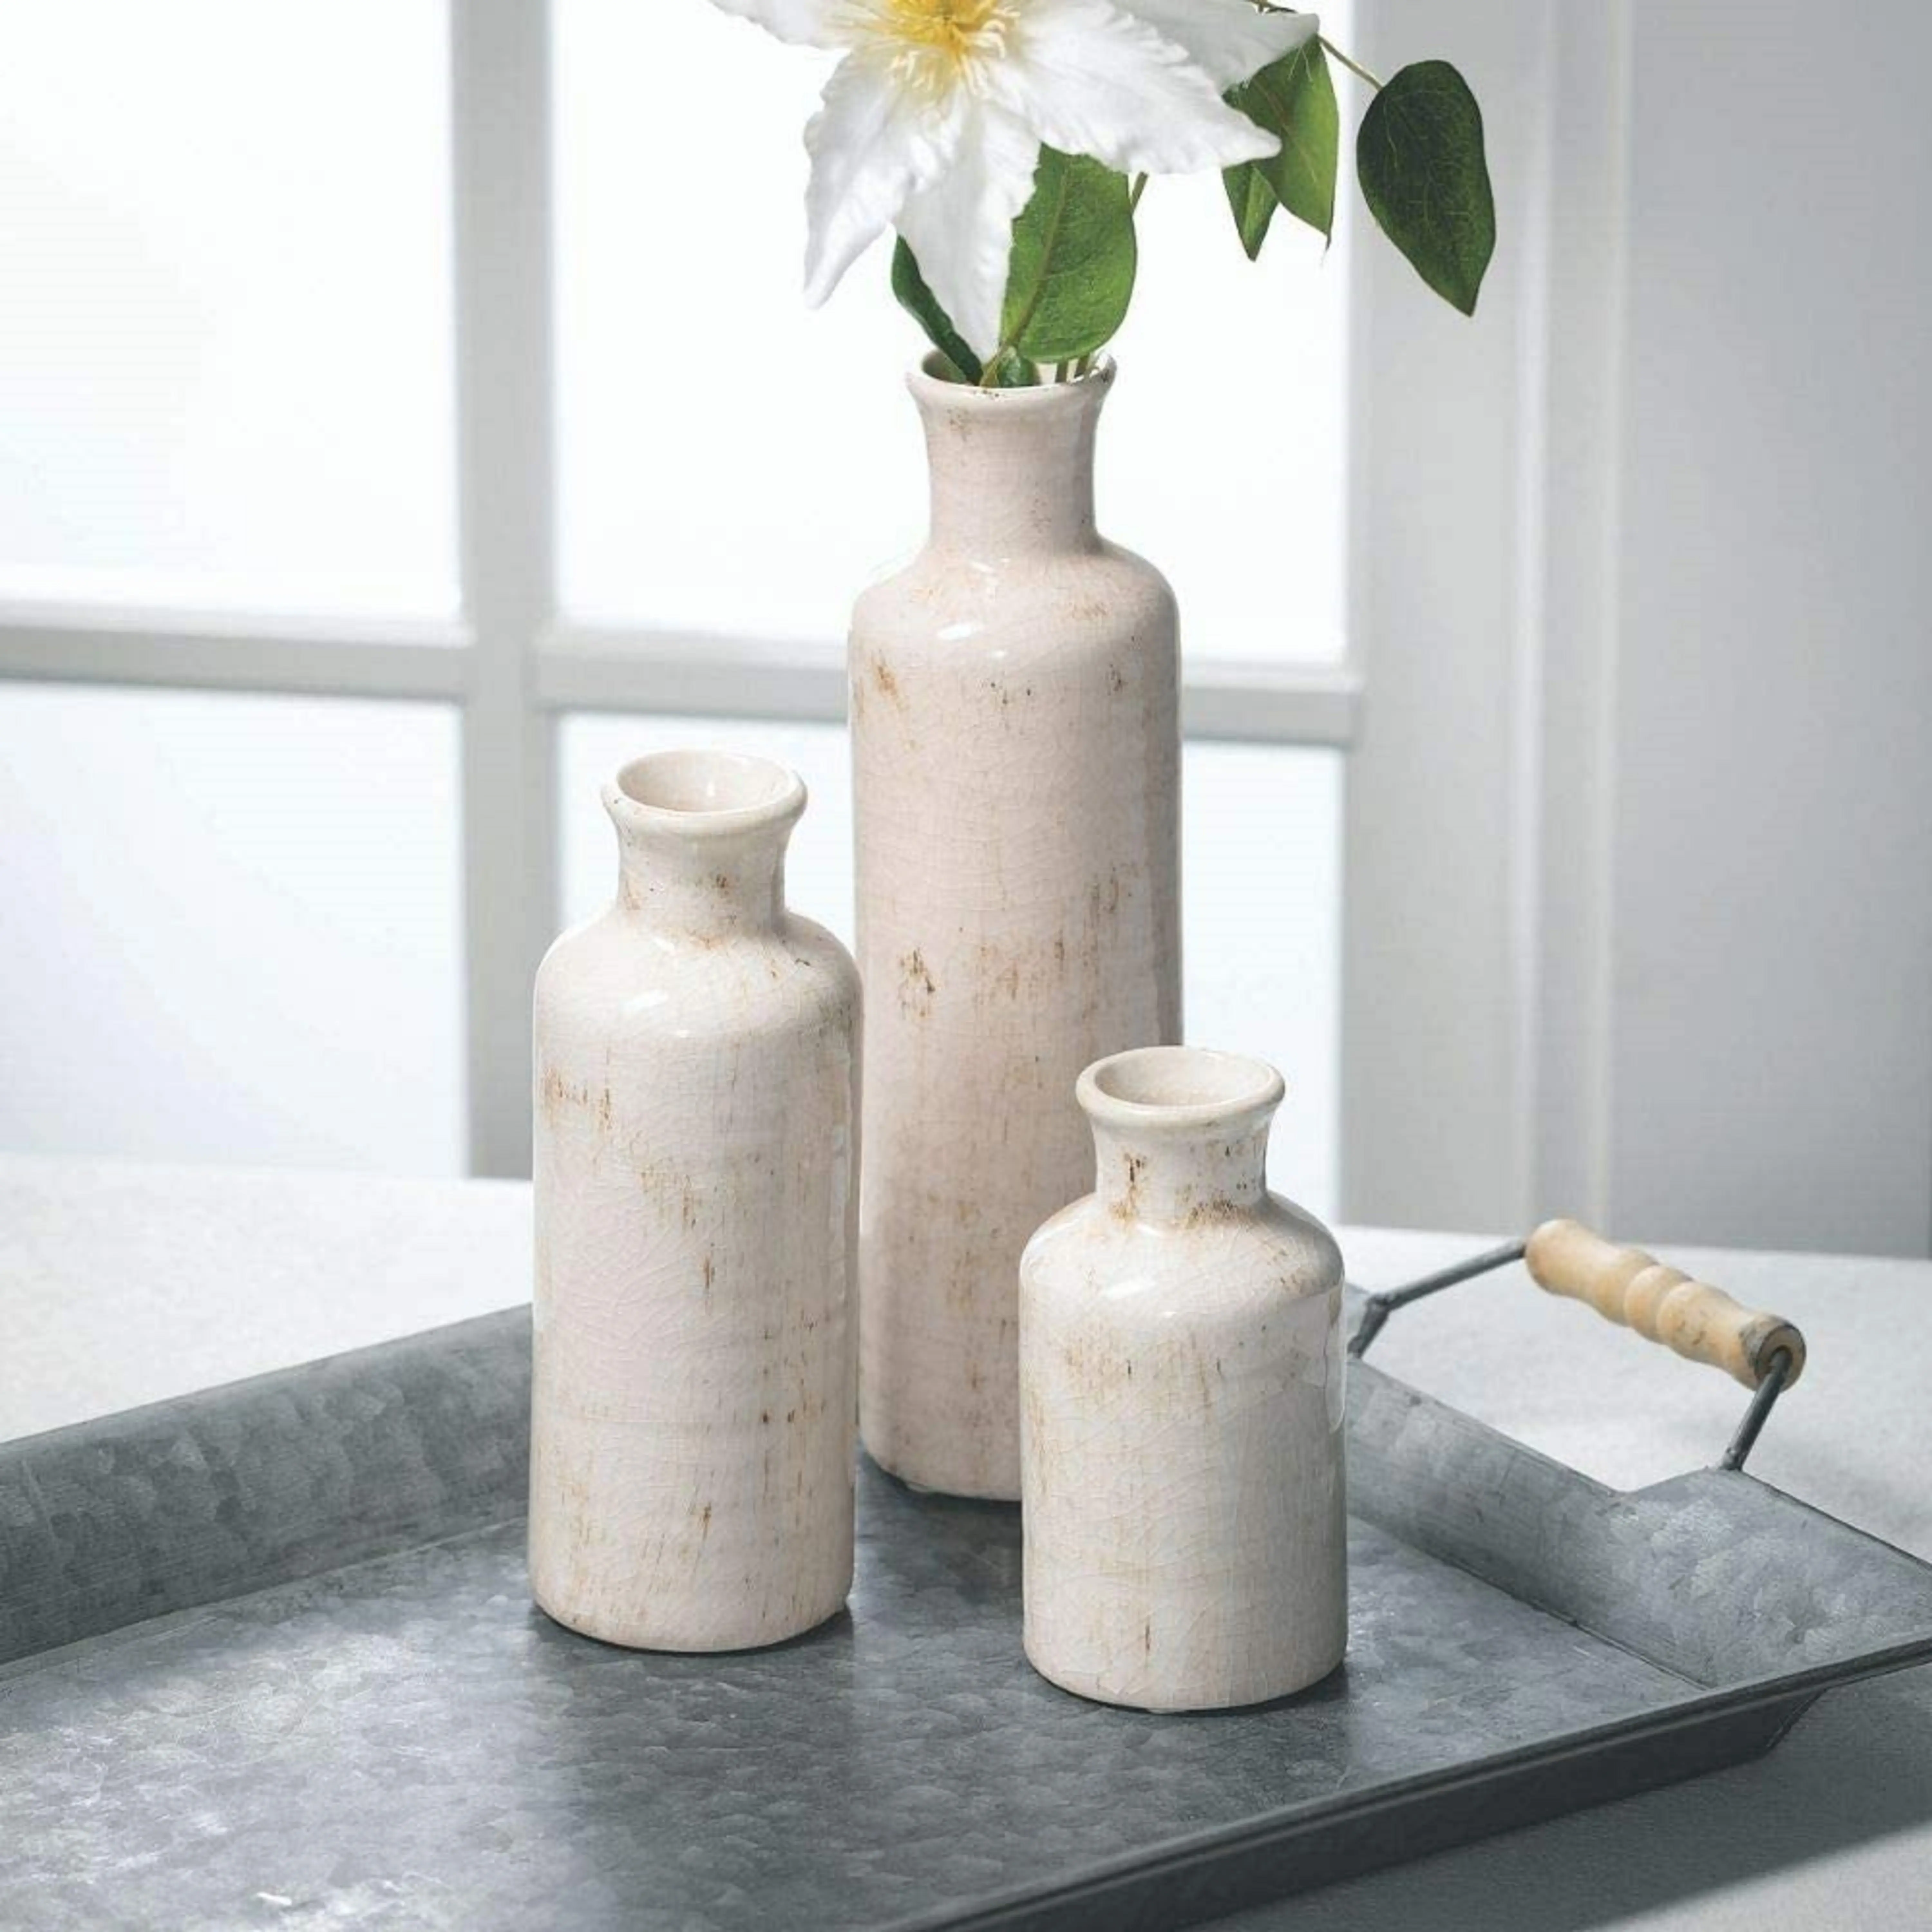 Lalique French Style Home Decor Vase Klare Europa Farbe Keramik & Porzellan Vasen Weiße Keramik Vasen